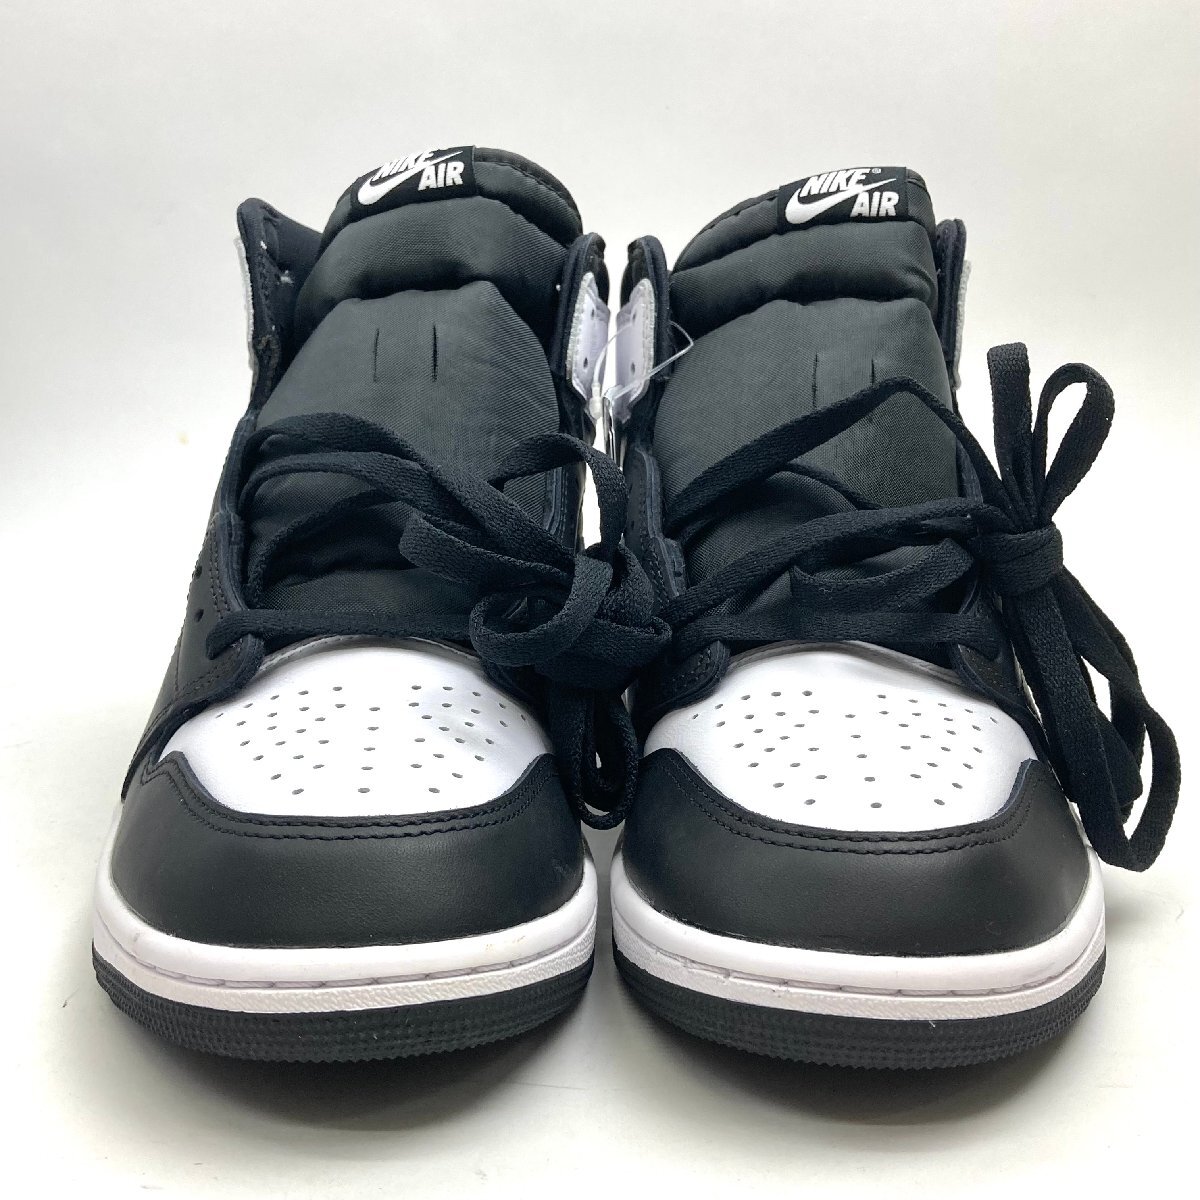 t) NIKE Nike Nike Air Jordan 1 RETRO air Jordan 1 retro HIGH OG Black & White DZ5485-010 men's 29.0cm unused simple packing shipping 